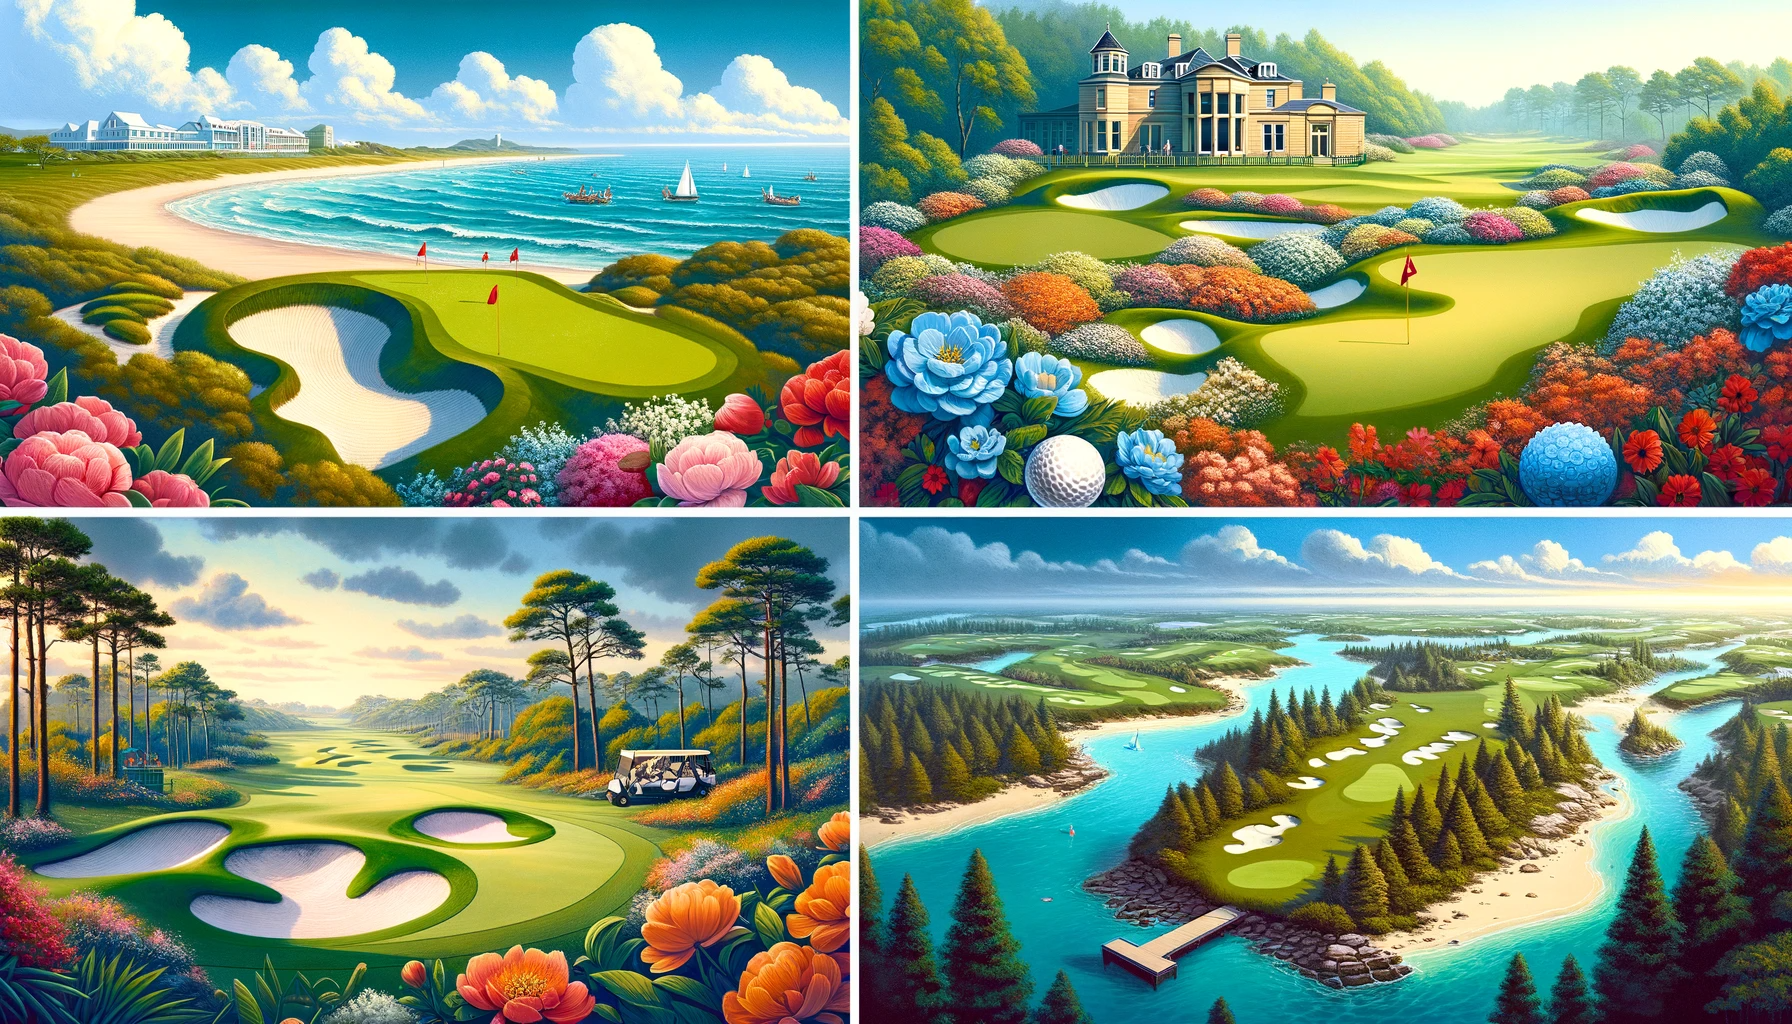 골프 여행의 묘미: 세계 명소 코스와 풍경의 아름다움 - 세계 각지의 명소 코스: 스토 앤드루스&#44; 아우구스타내셔널&#44; 바나나 골프 코스&#44; 버밀리아힐스